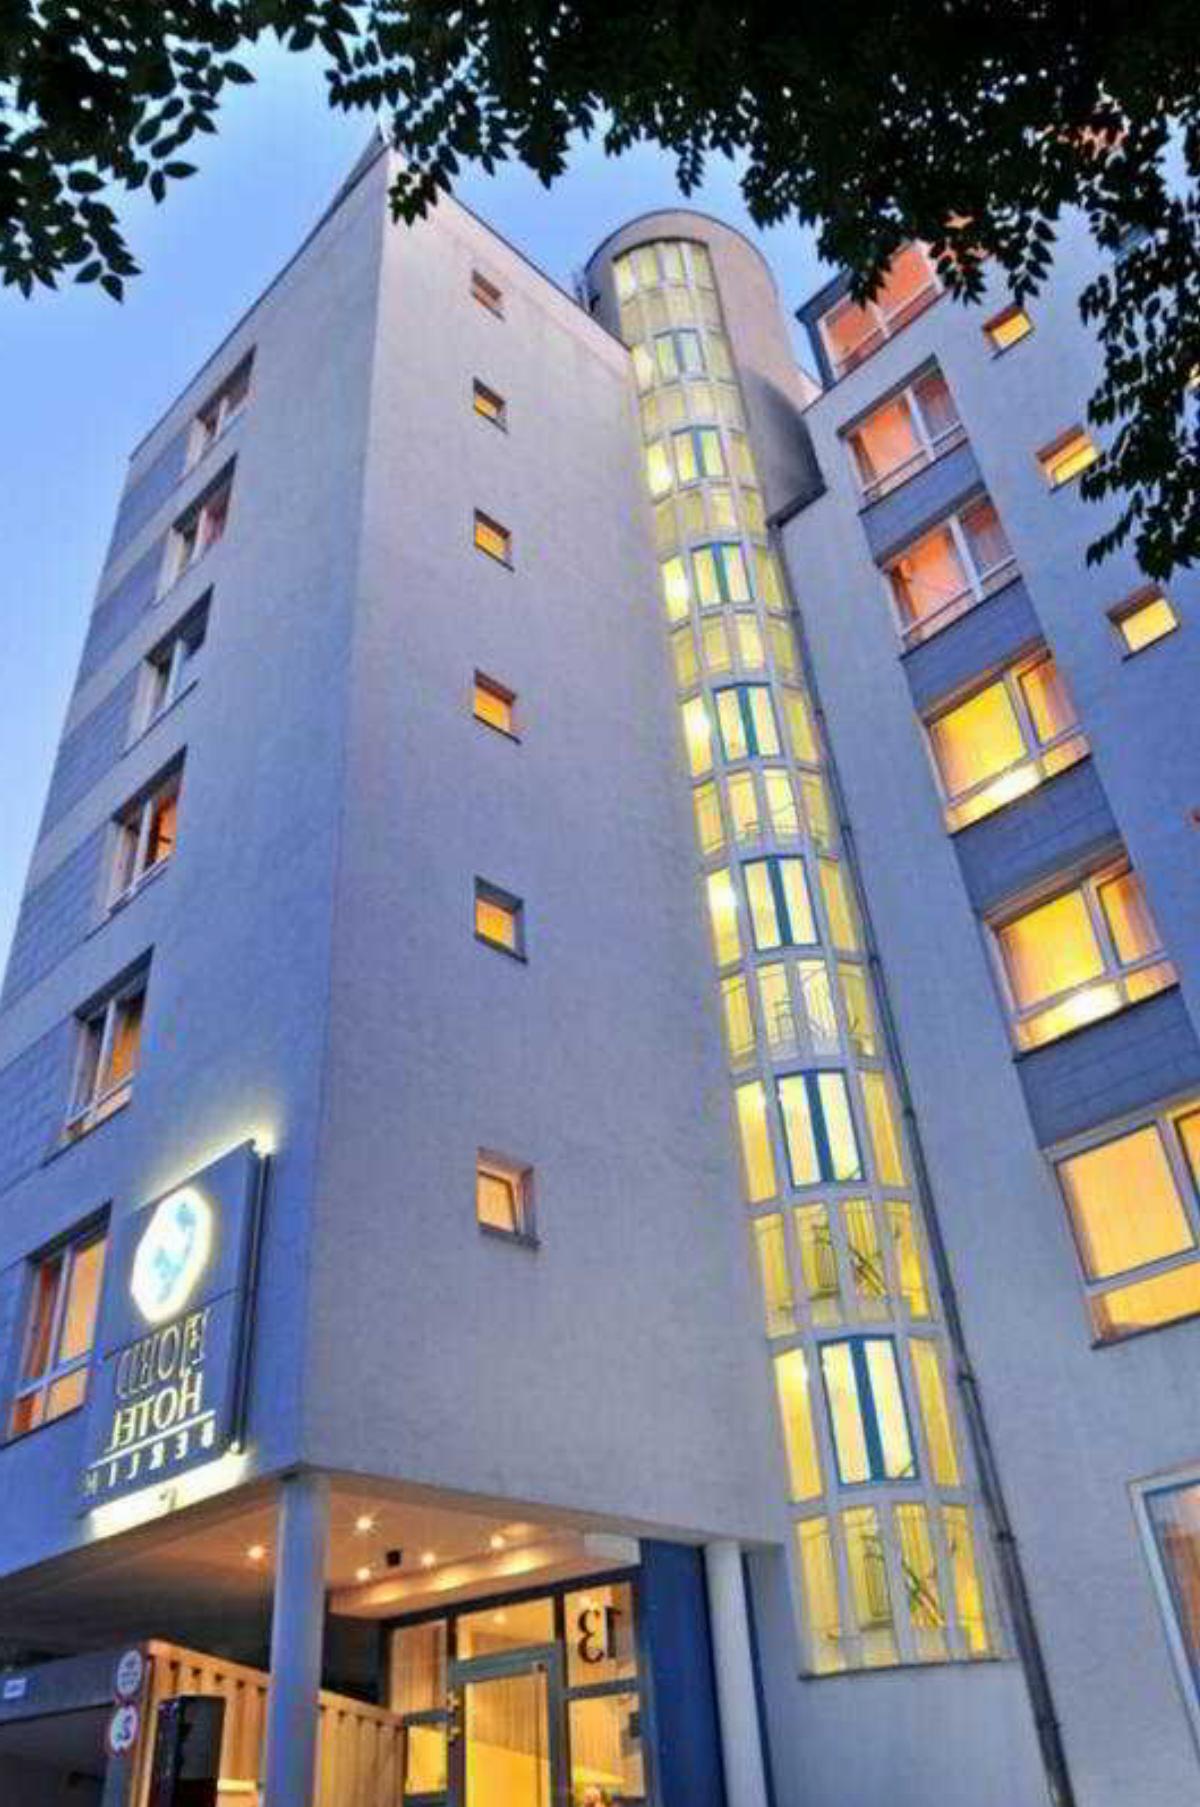 fjord hotel berlin Hotel Berlin Germany